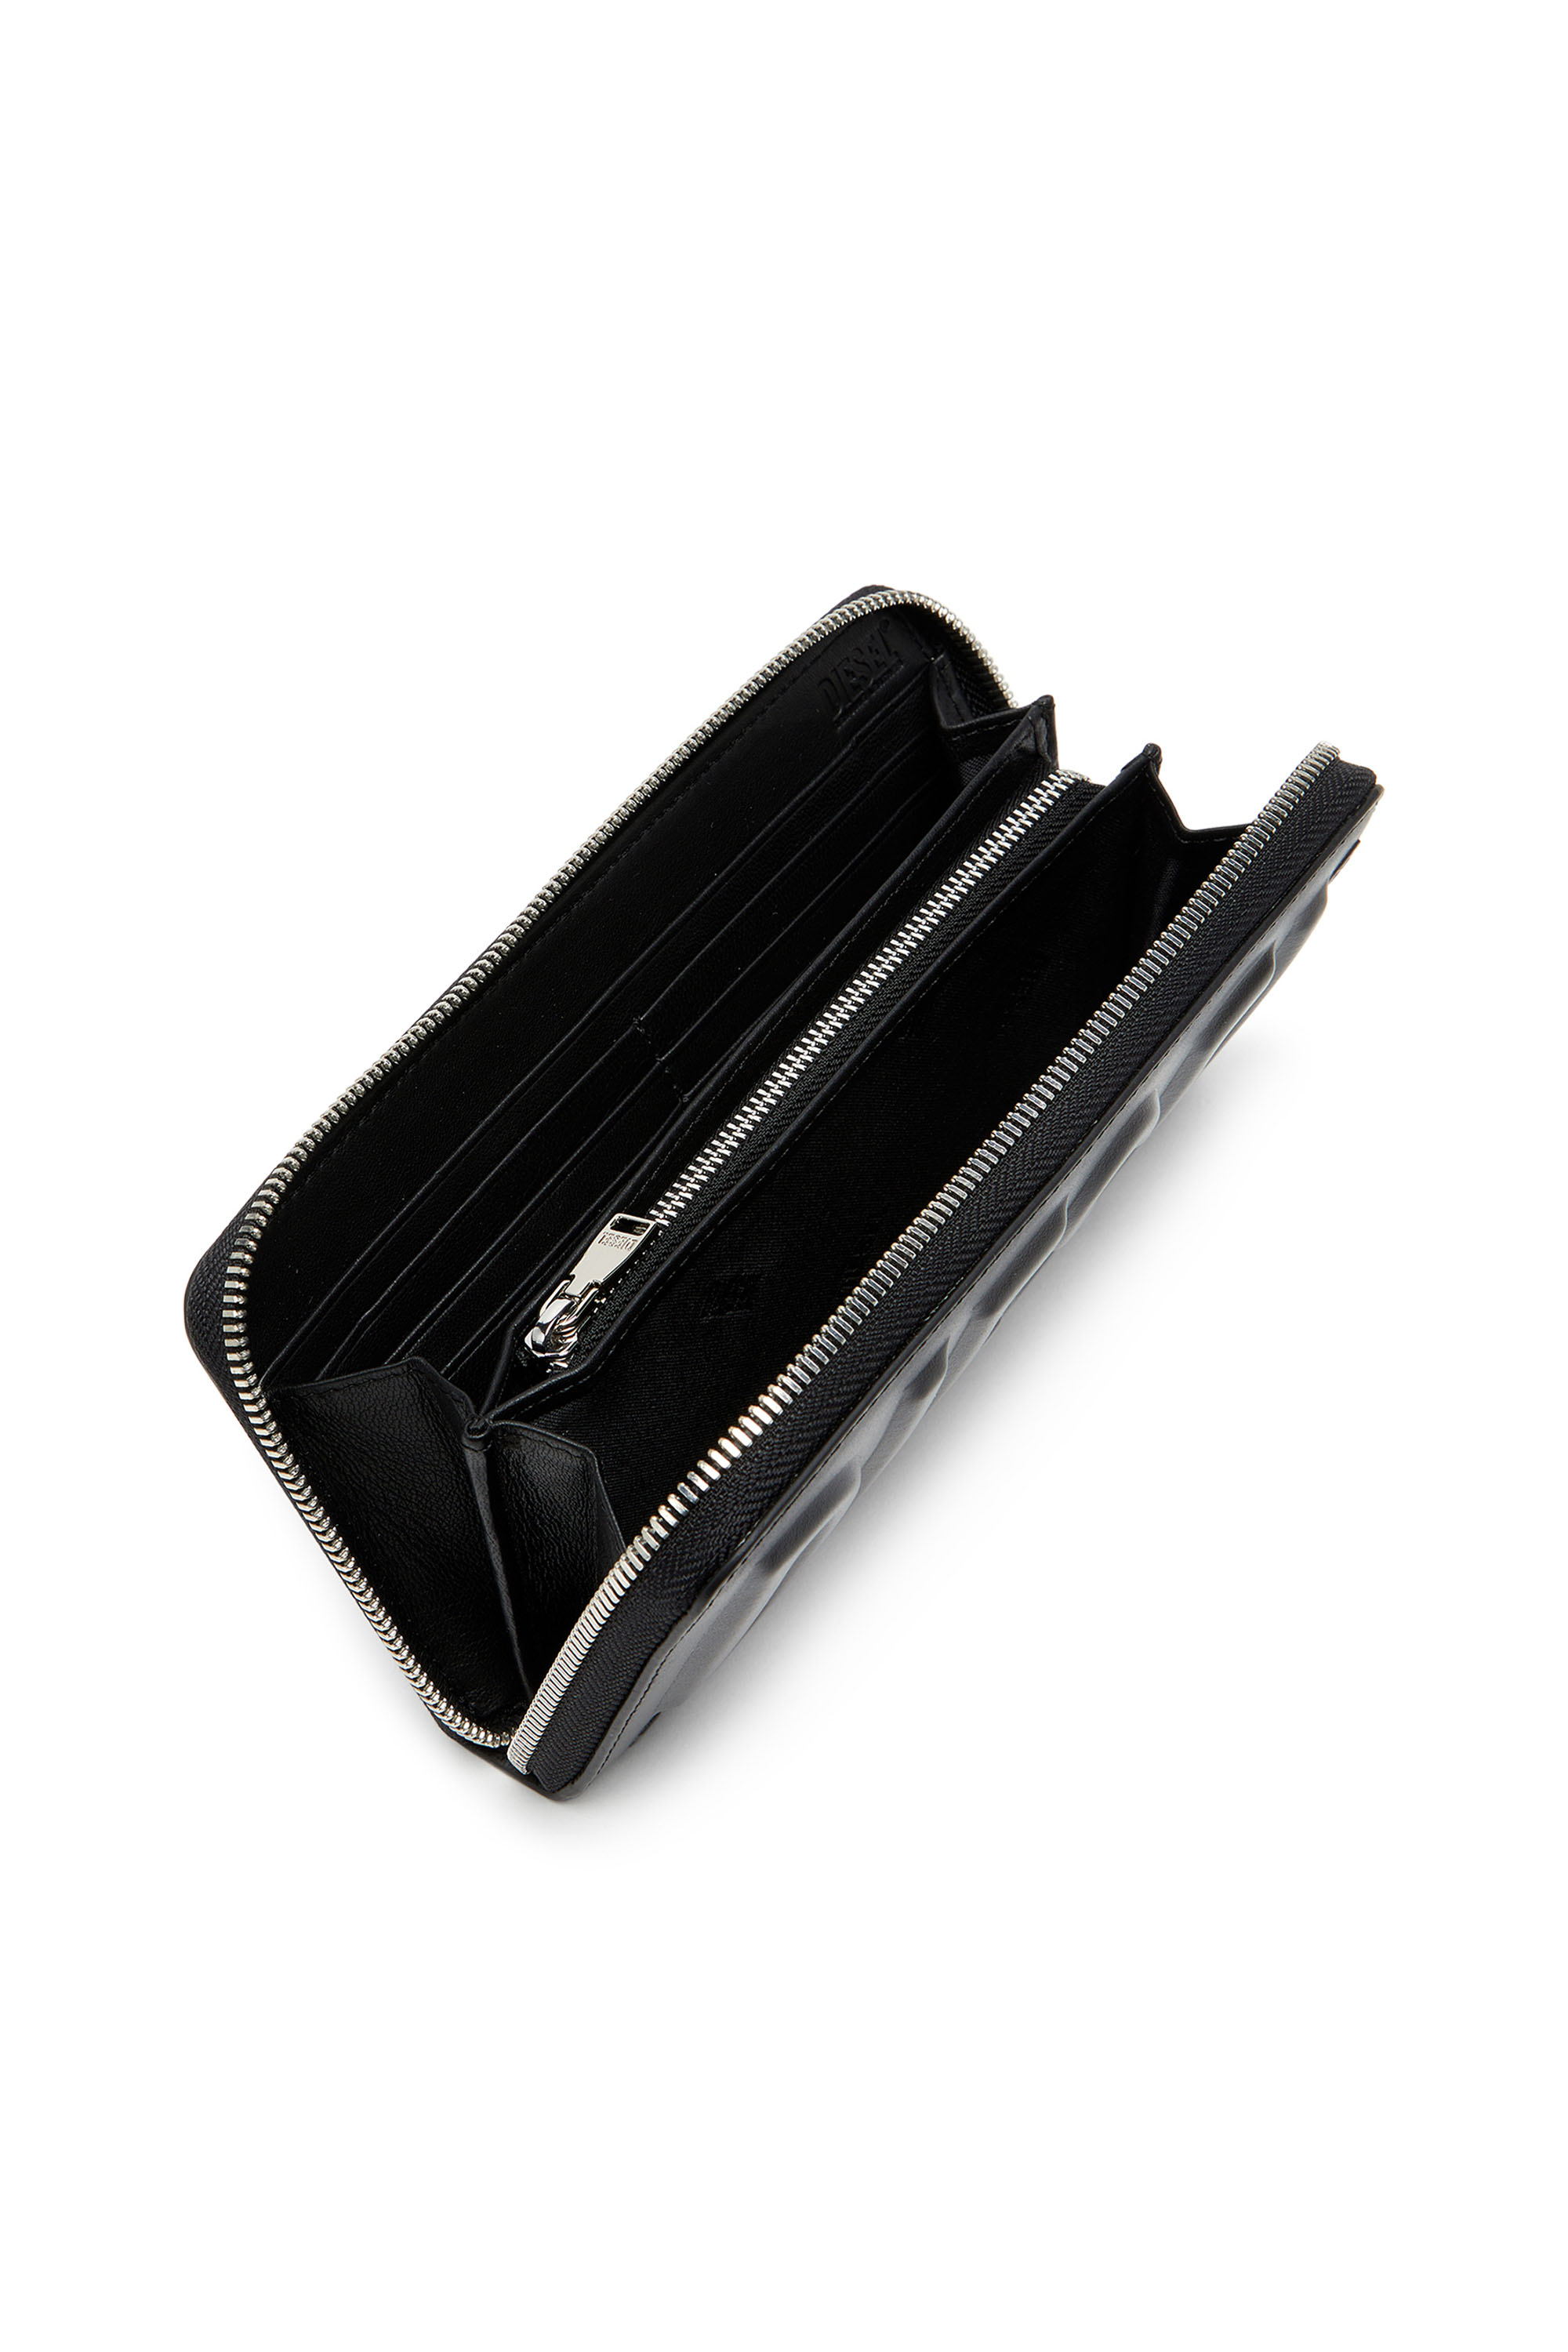 Diesel - DSL 3D -CONTINENTAL ZIP L, Man Long zip wallet in logo-embossed leather in Black - Image 3